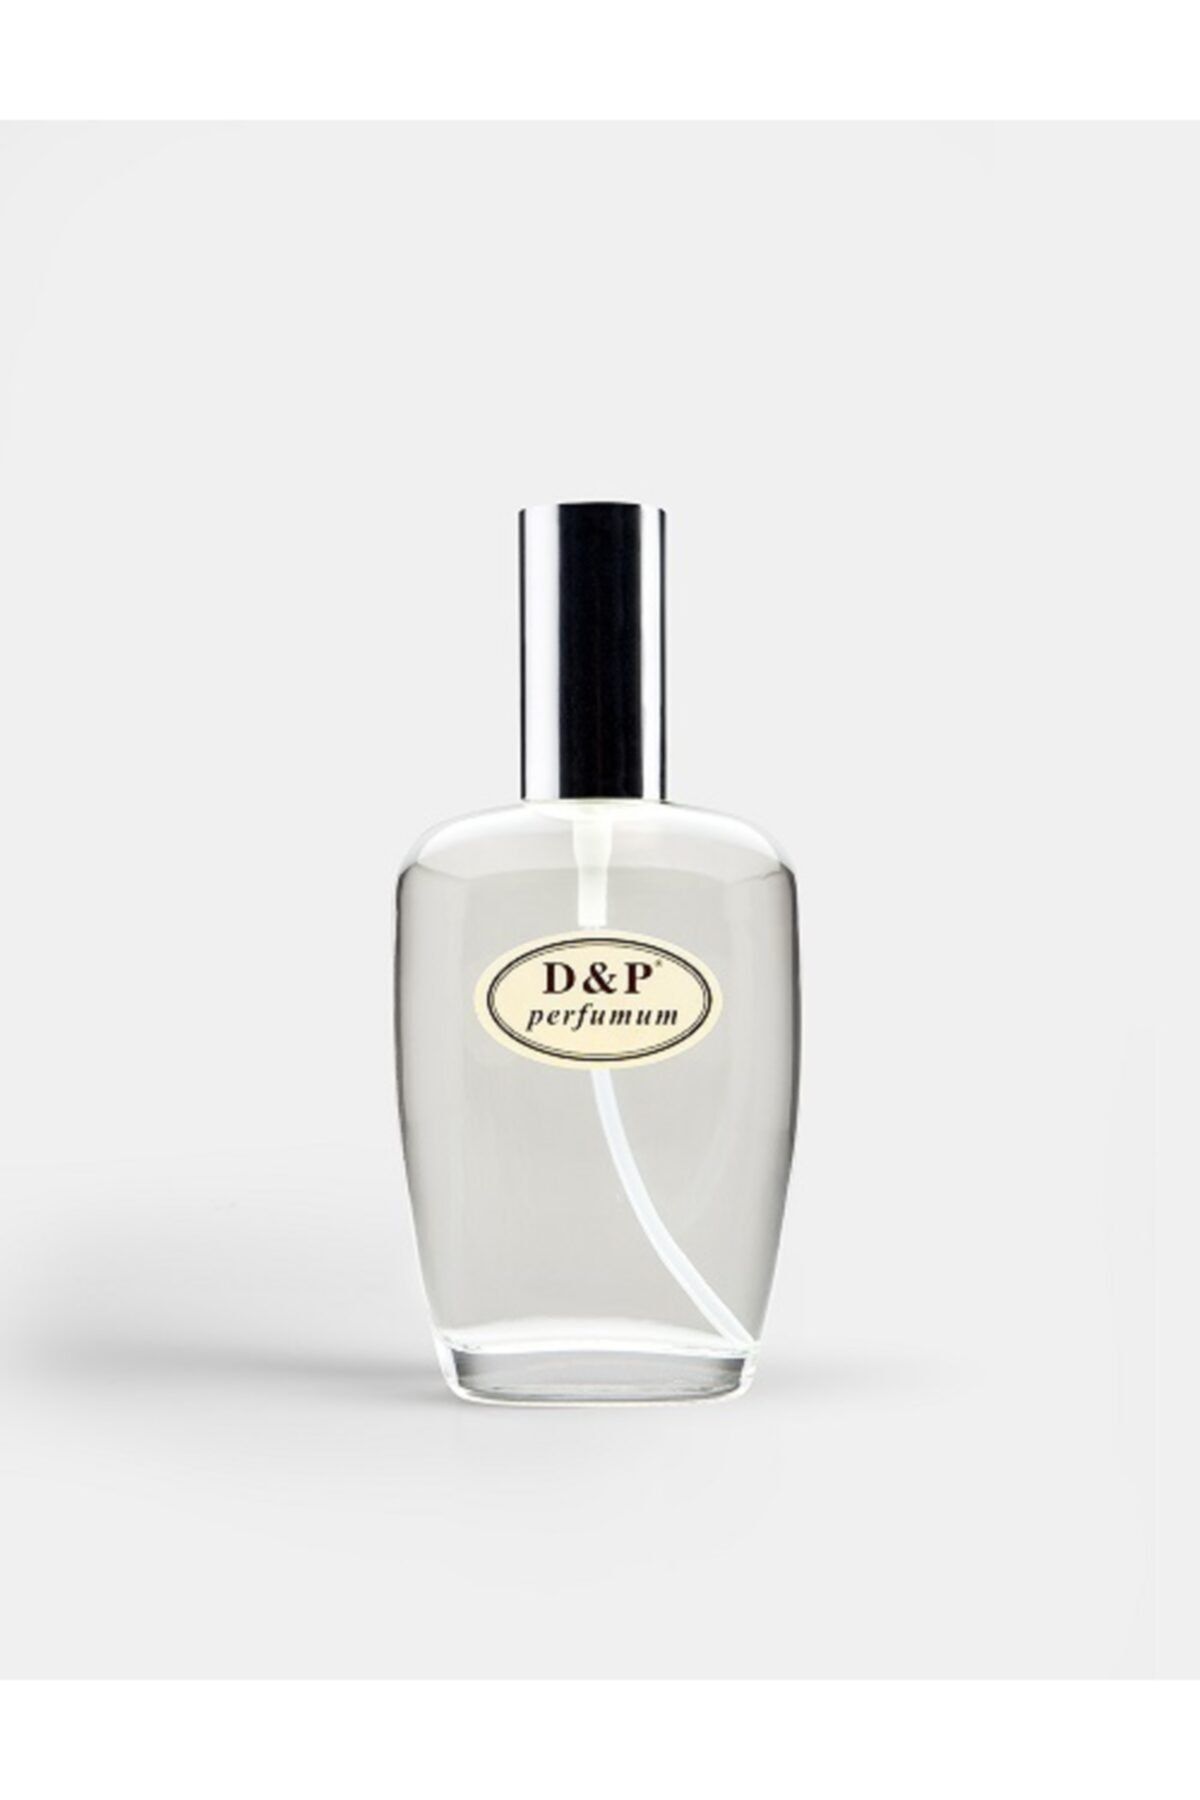 D&P Perfumum A19 Kadın Parfüm 100 ml